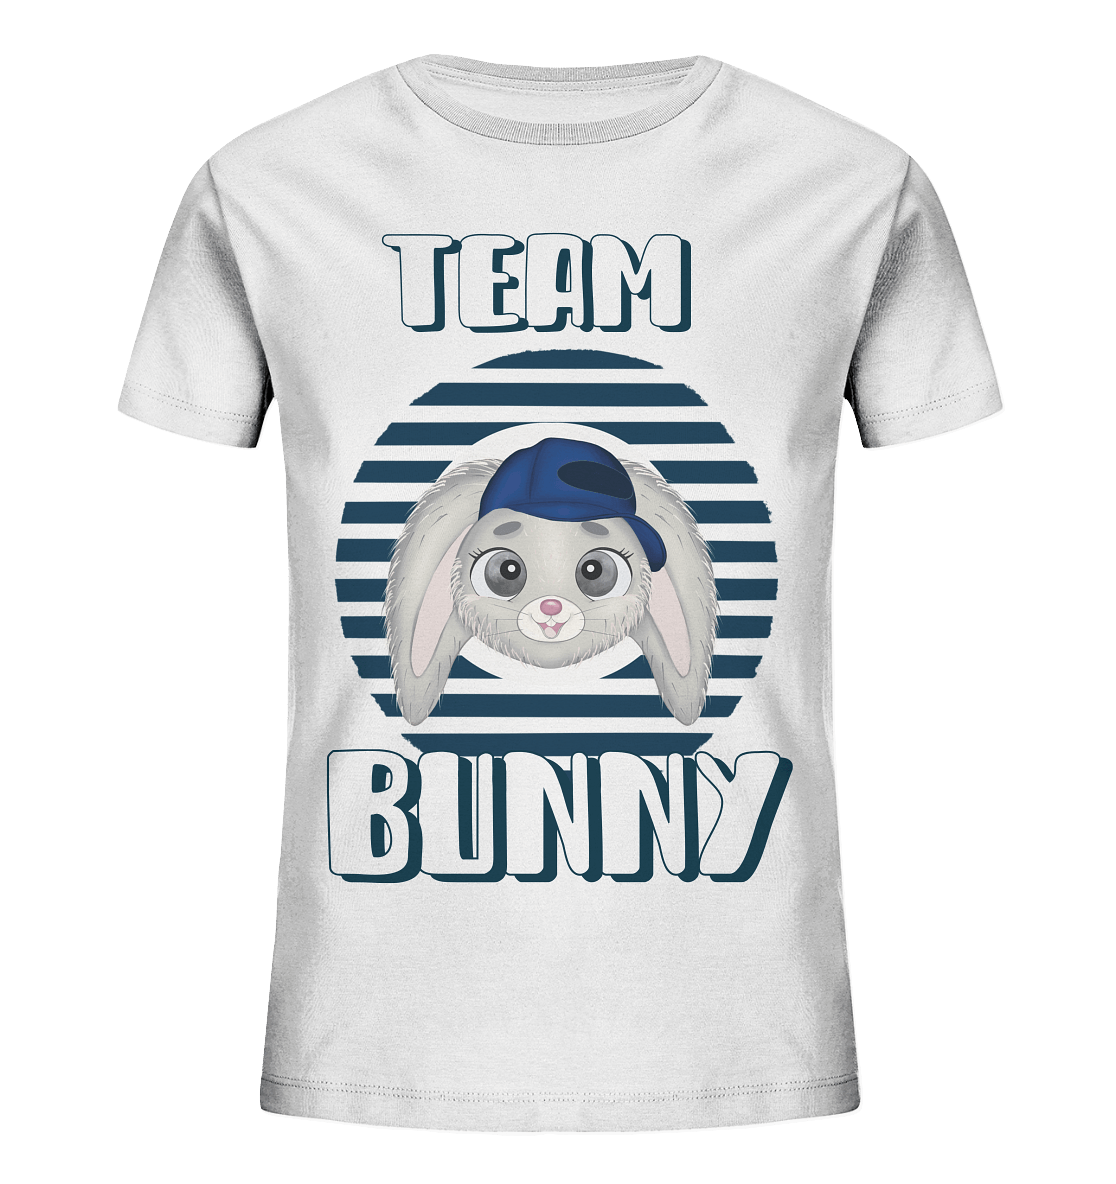 Maritime Shirt Hase Team Bunny in weiß mit blauen Streifen, Streifen T-Shirt mit blauen Streifen und Hase